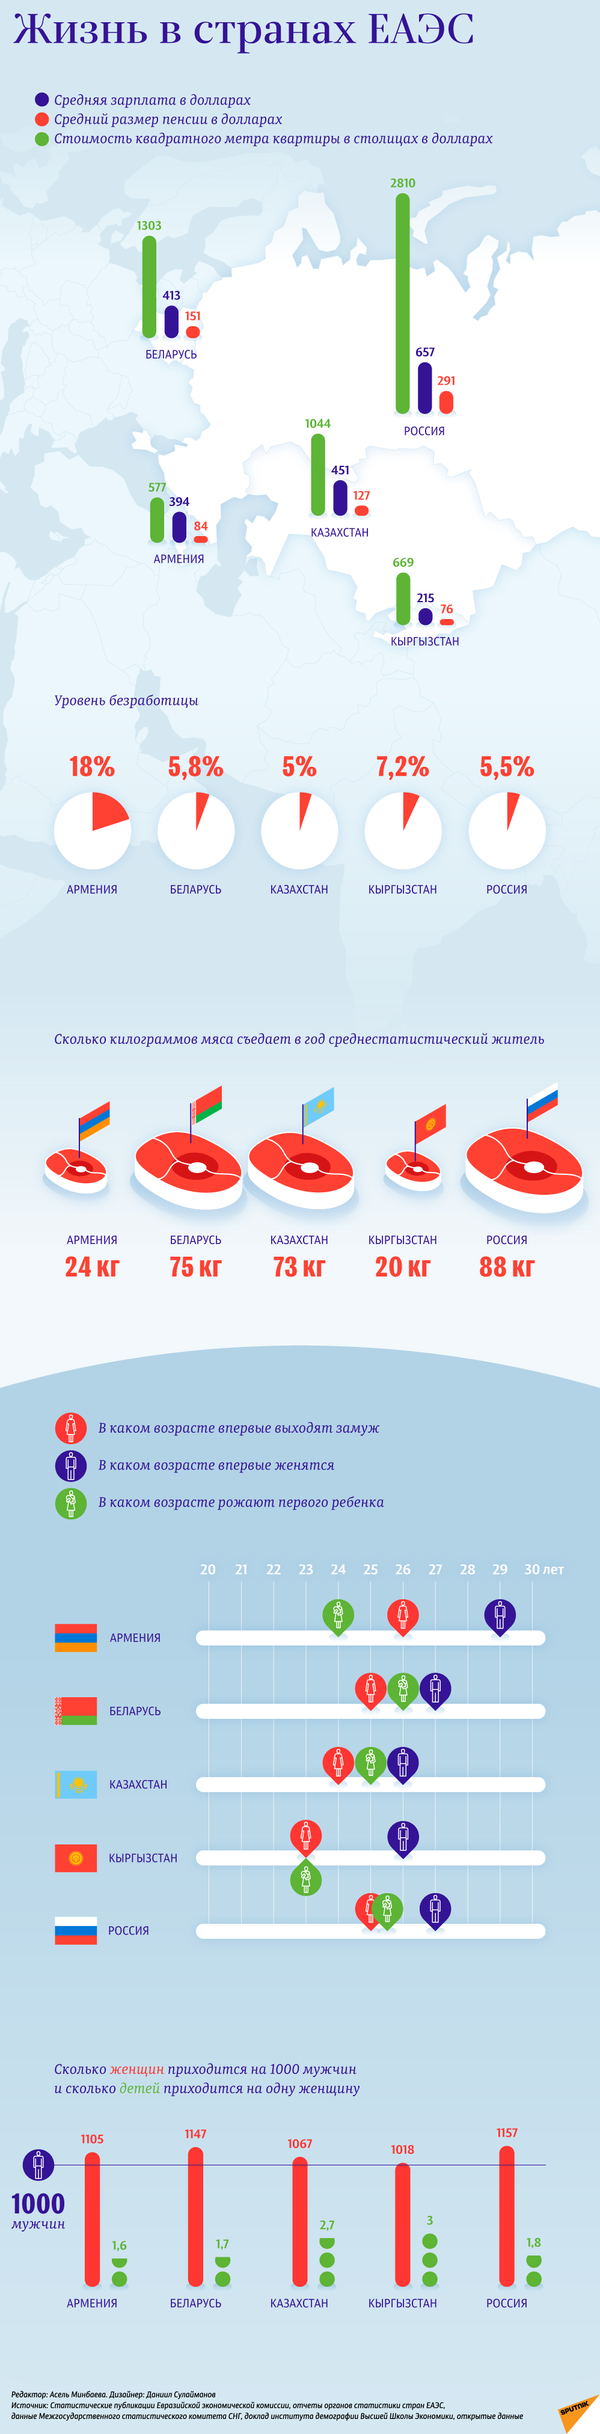 Уровень жизни в странах ЕАЭС – инфографика на sputnik.by - Sputnik Армения